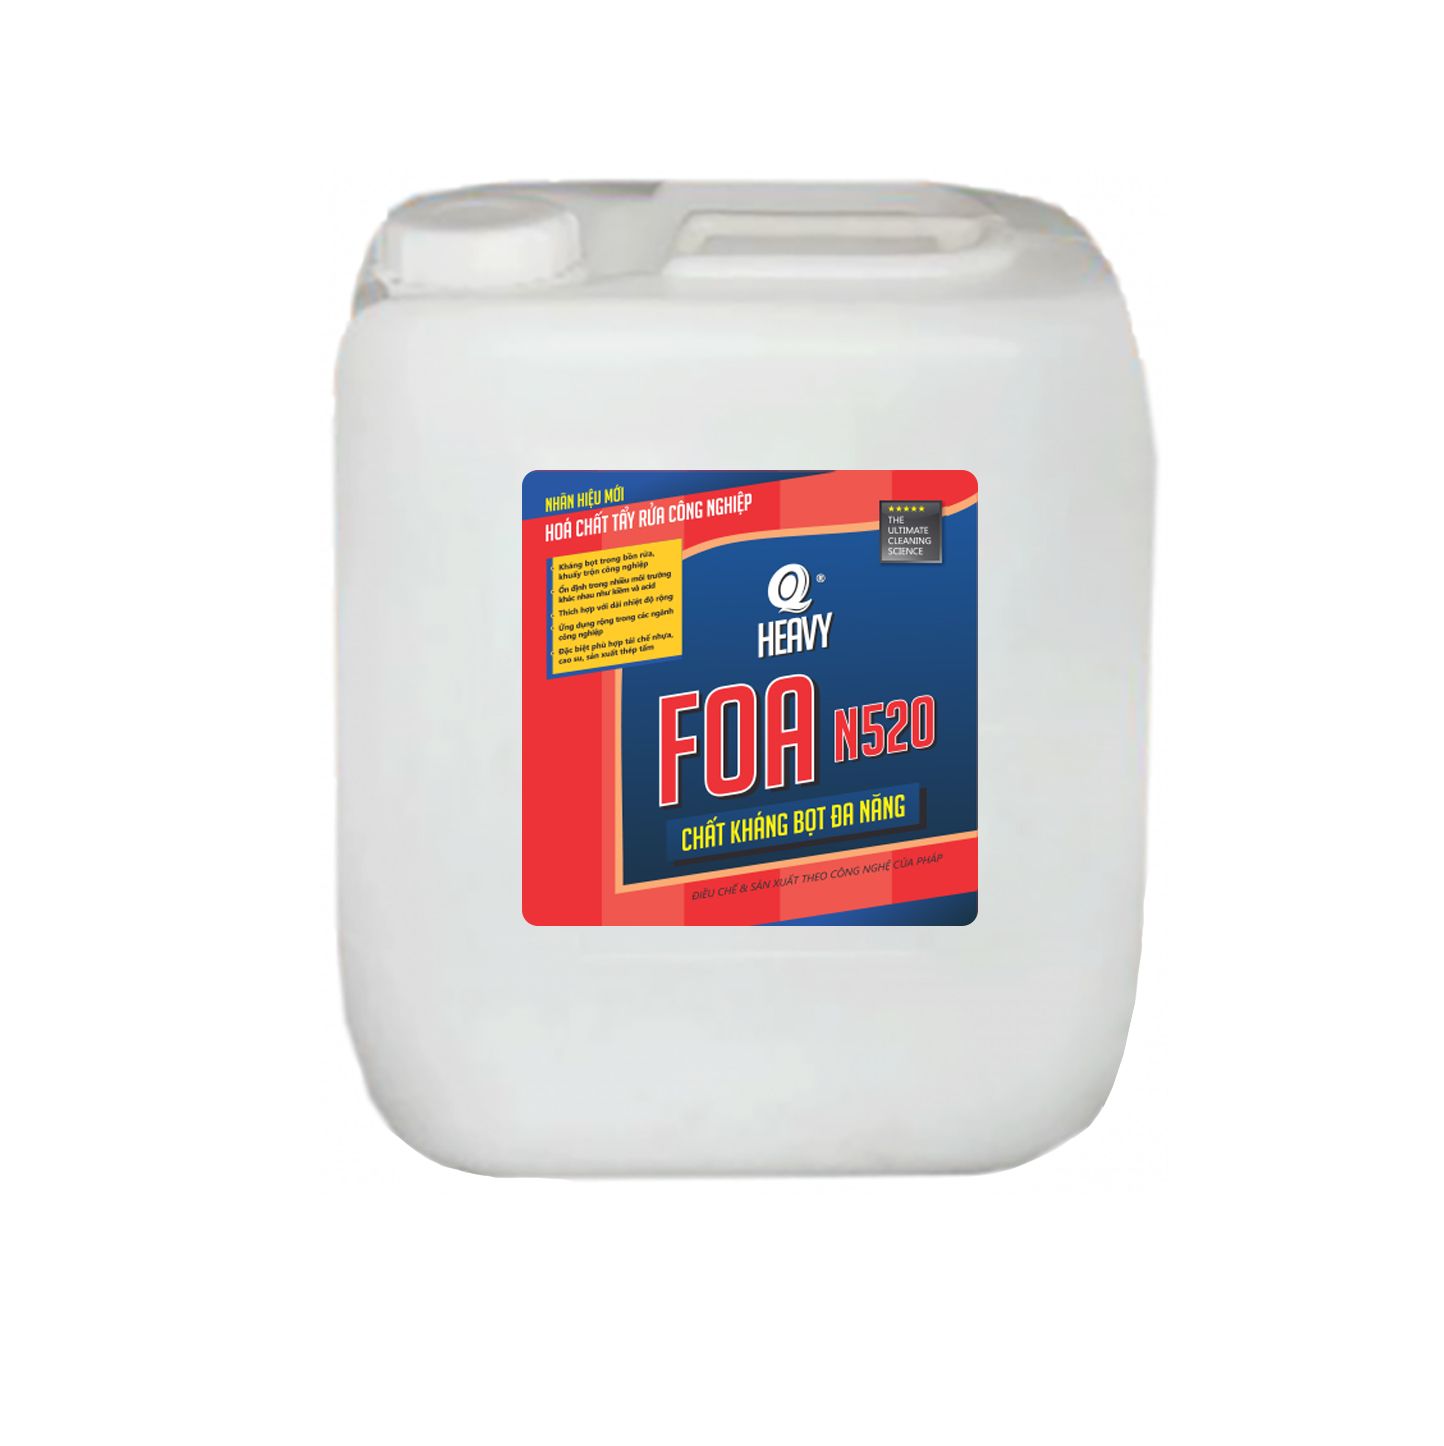  Hóa chất kháng bọt đa năng FOA N520 